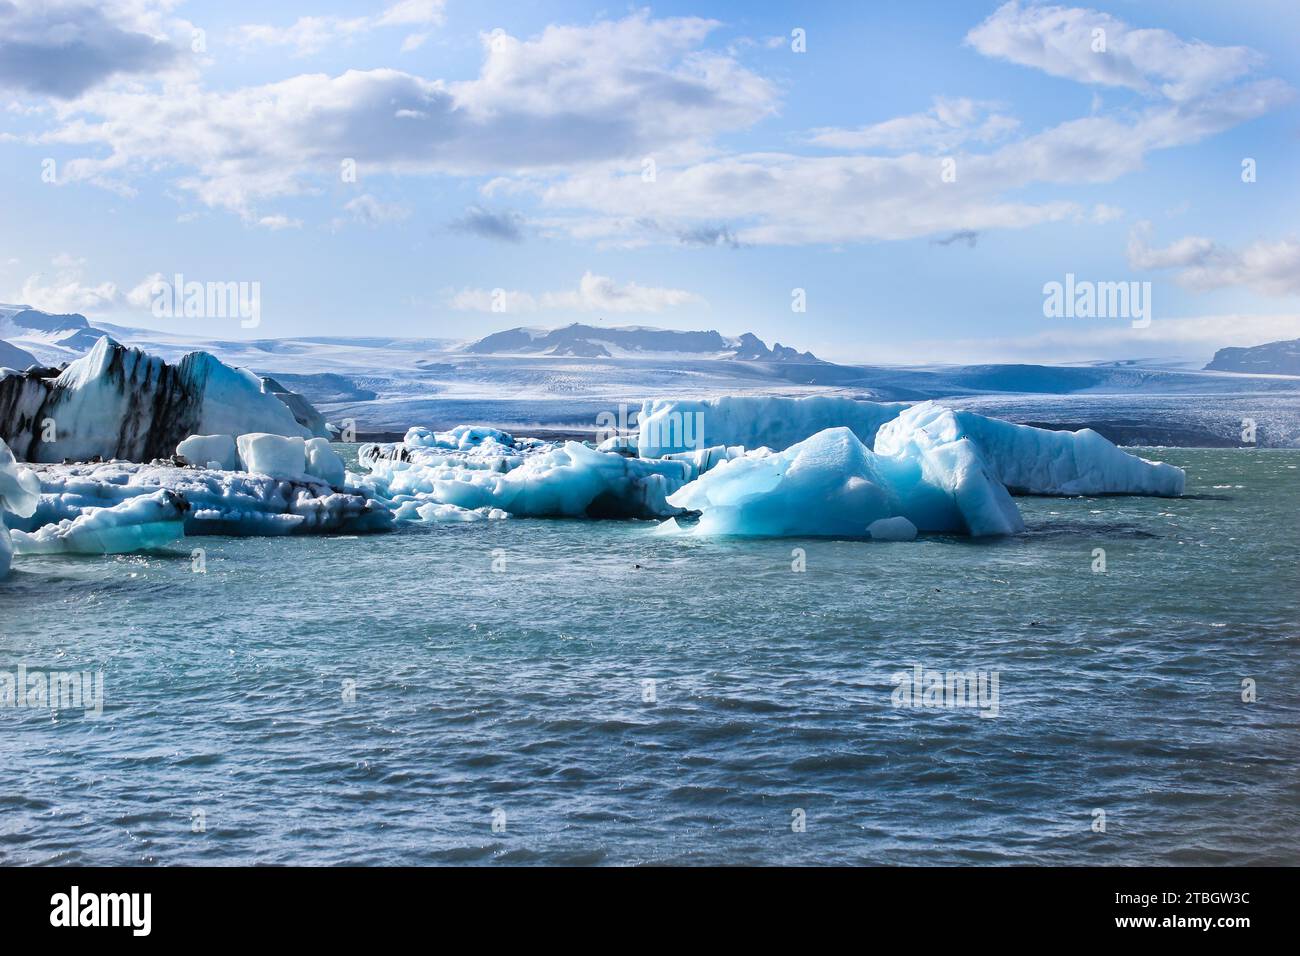 Catturare la bellezza senza tempo dei ghiacciai islandesi, Dove l'arte ghiacciata della natura incontra una serenità mozzafiato Banque D'Images